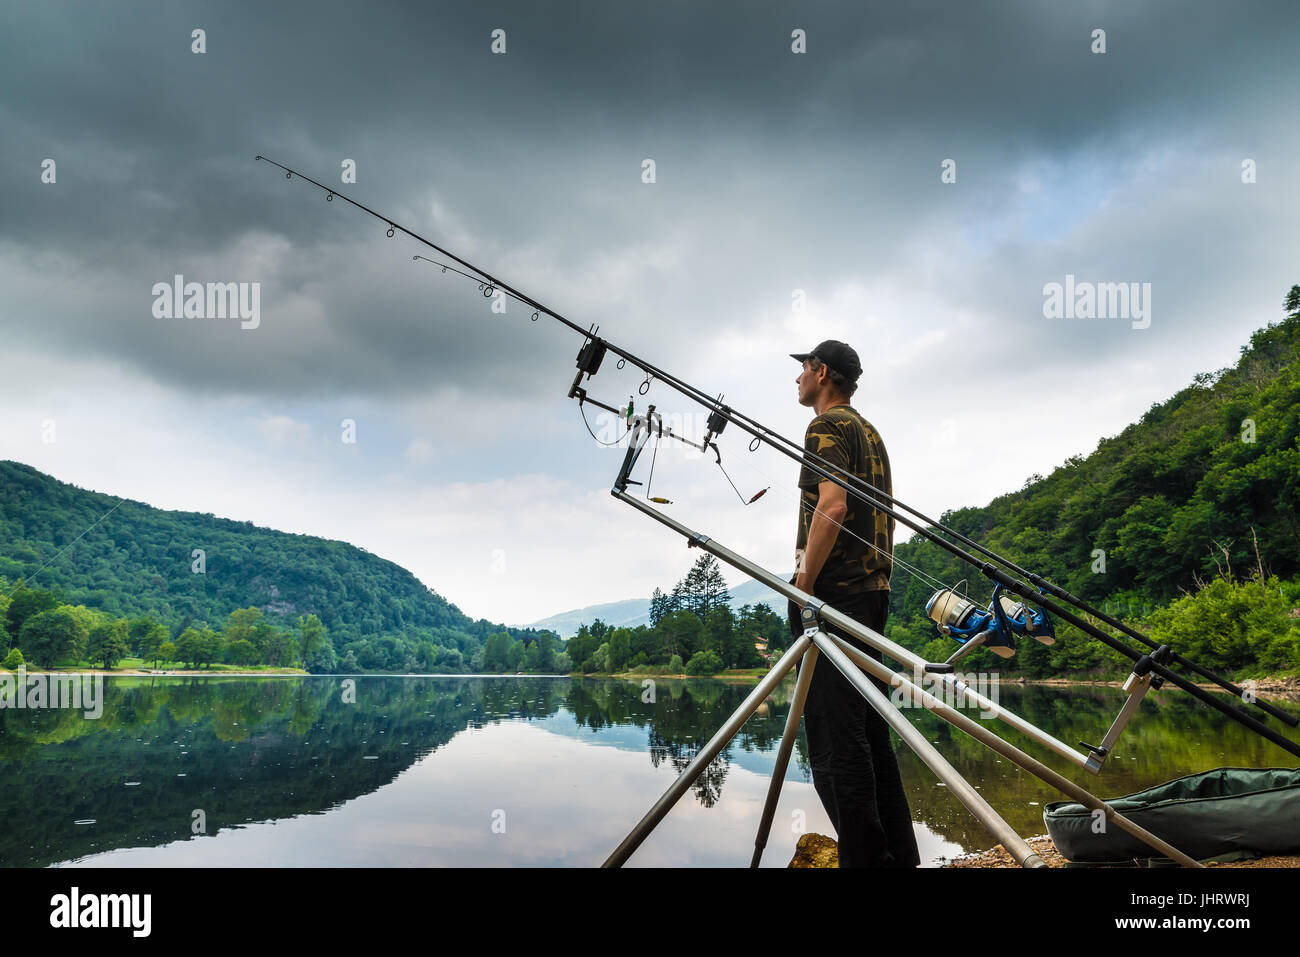 Le avventure di pesca, la pesca alla carpa. Il pescatore sulla riva di un lago in una mattinata con cielo scuro e le nuvole grigio Foto Stock